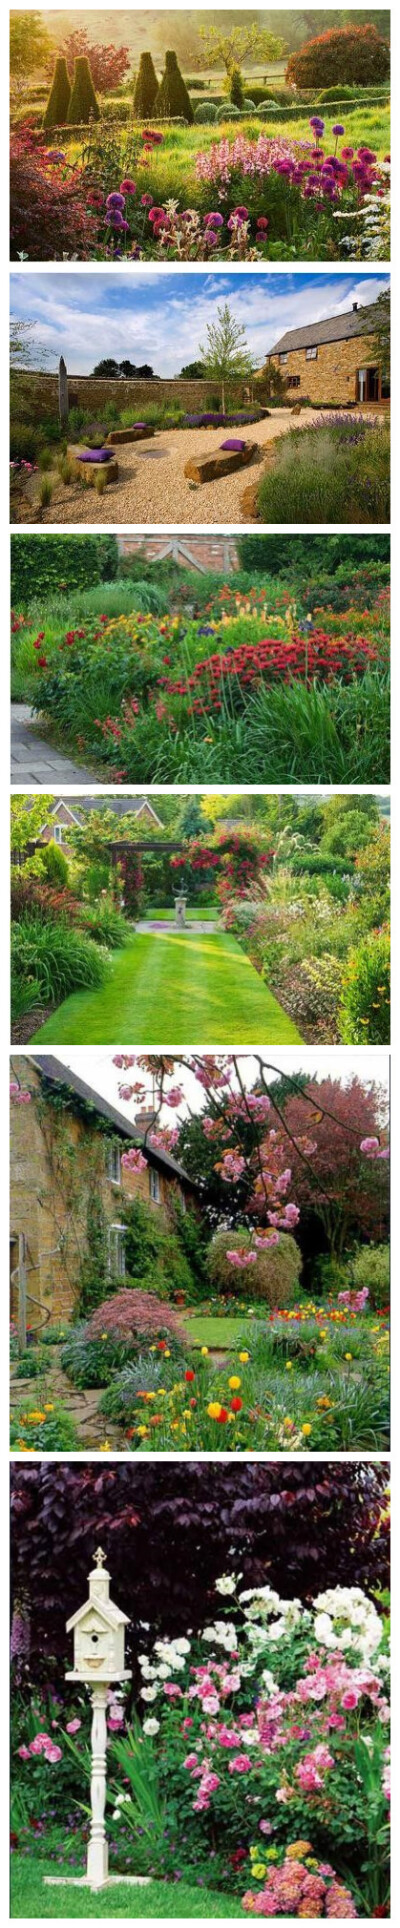 #植言片语#如果你想拥有一个英式花园，之前要扪心自问：我是否是个有耐心的人？我是否愿意花时间去照顾他们？爱园艺不仅是一种口号，更是一种责任。